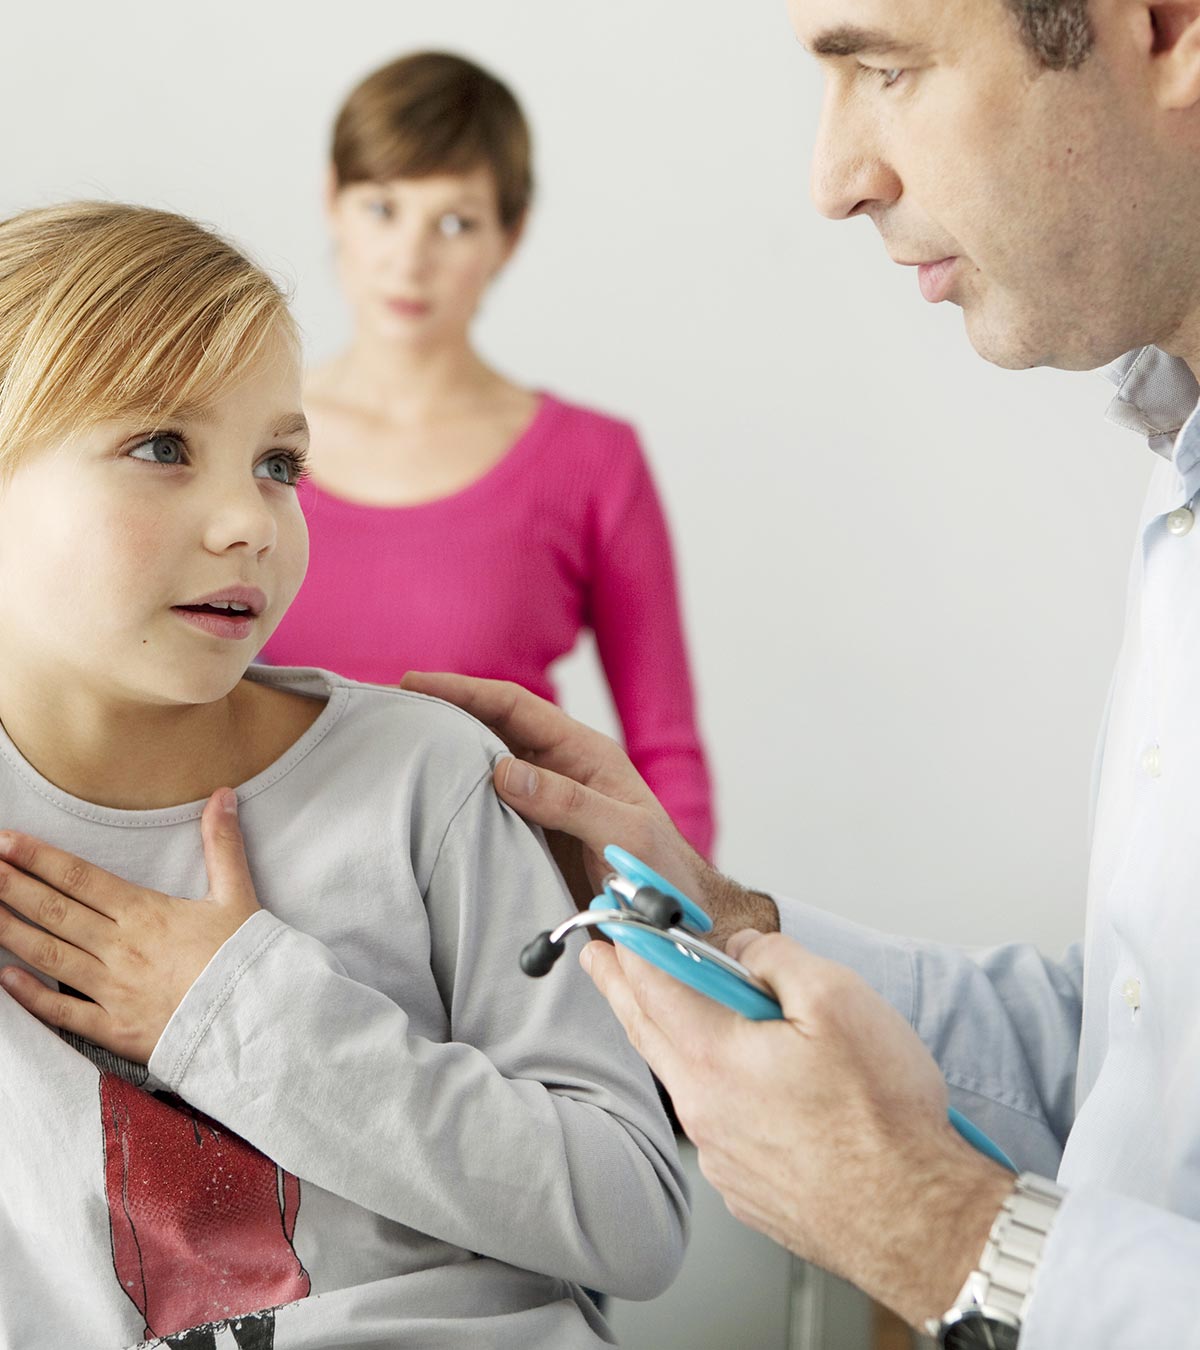 儿童喘息:原因、症状和家庭护理提示